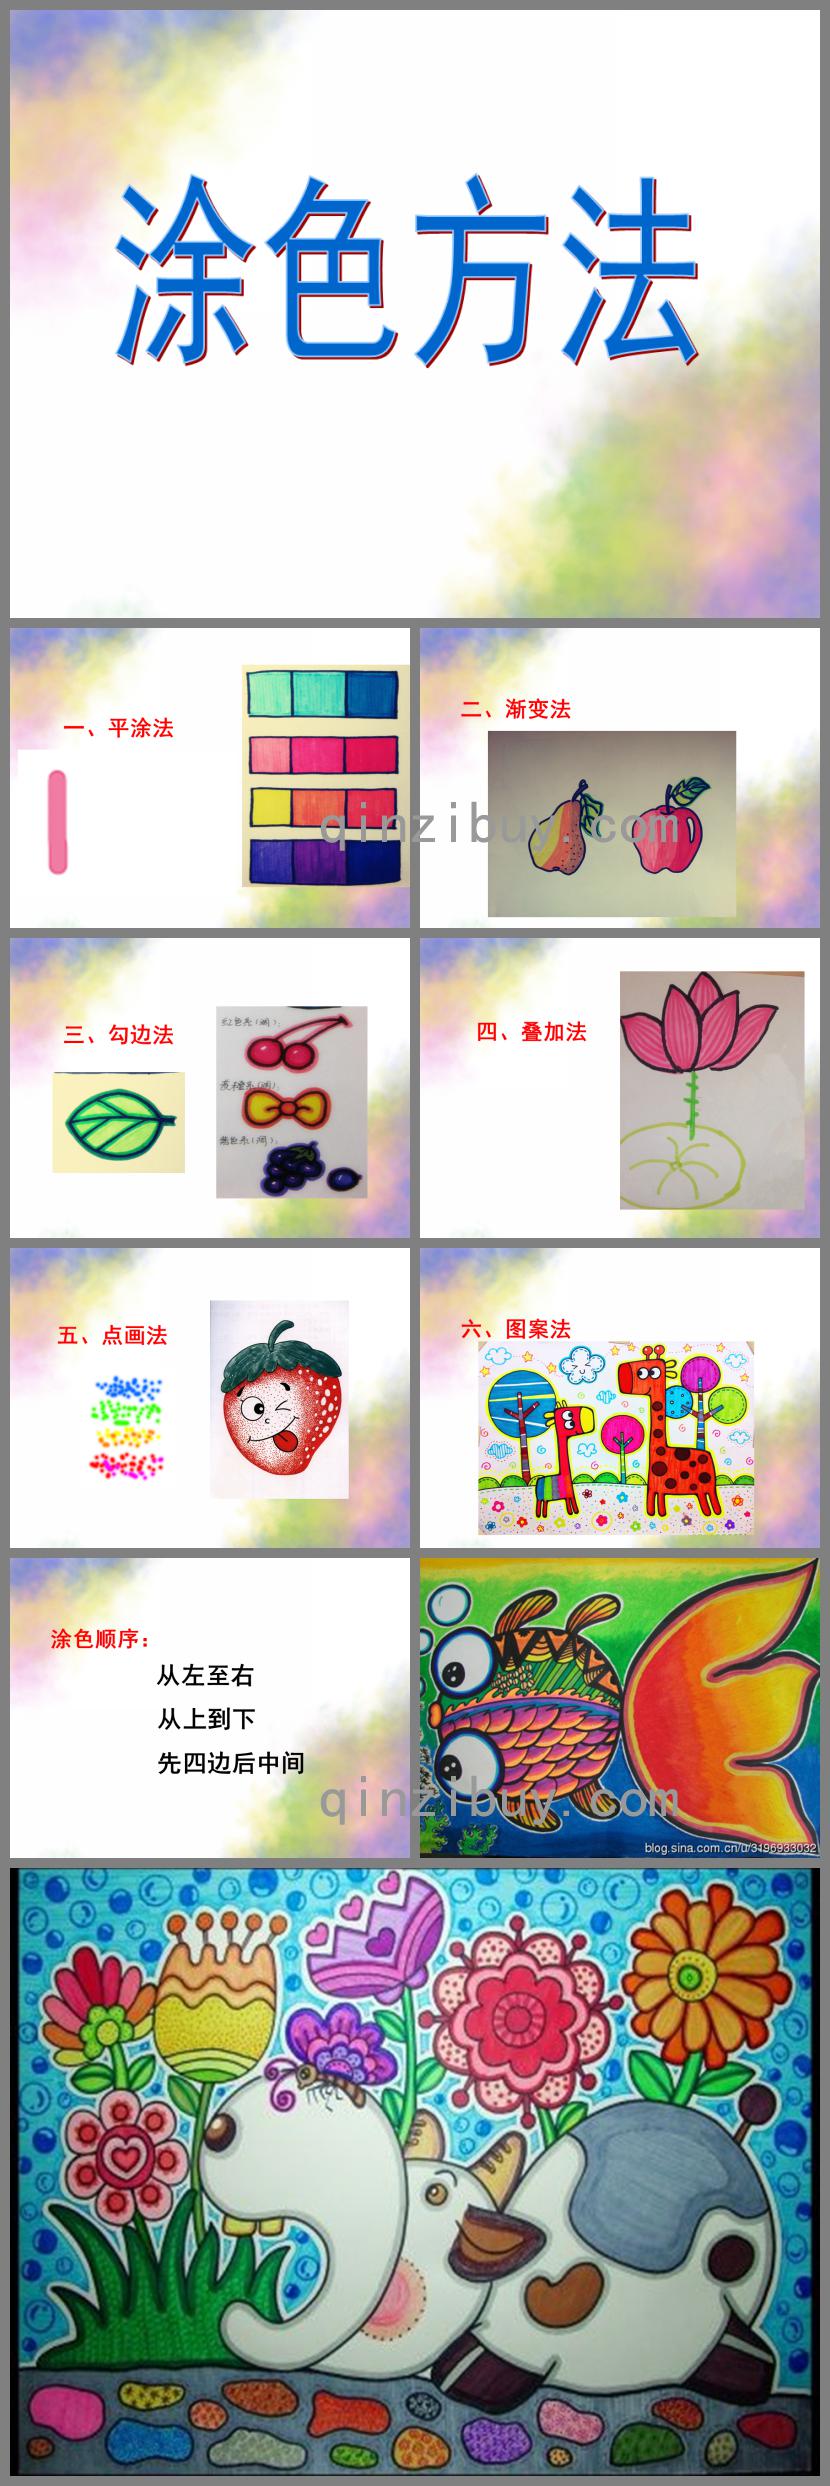 幼儿园儿童画水彩笔涂色方法PPT课件